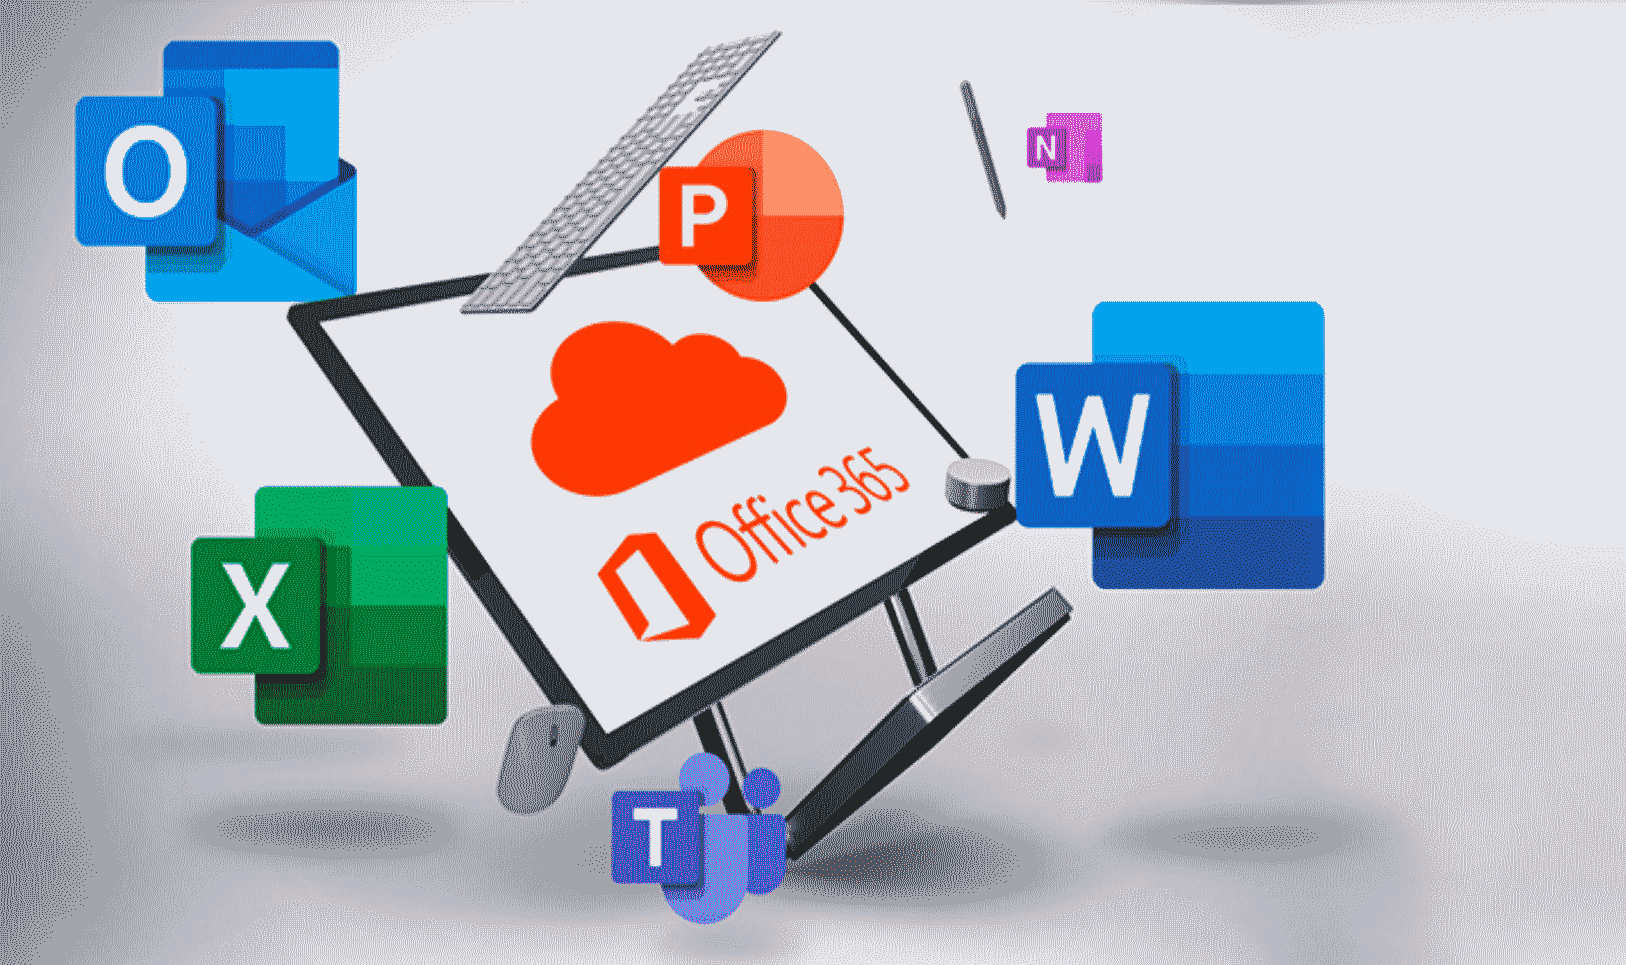 Cómo conseguir Microsoft Office 365 gratis si eres estudiante - Cultura  Informática